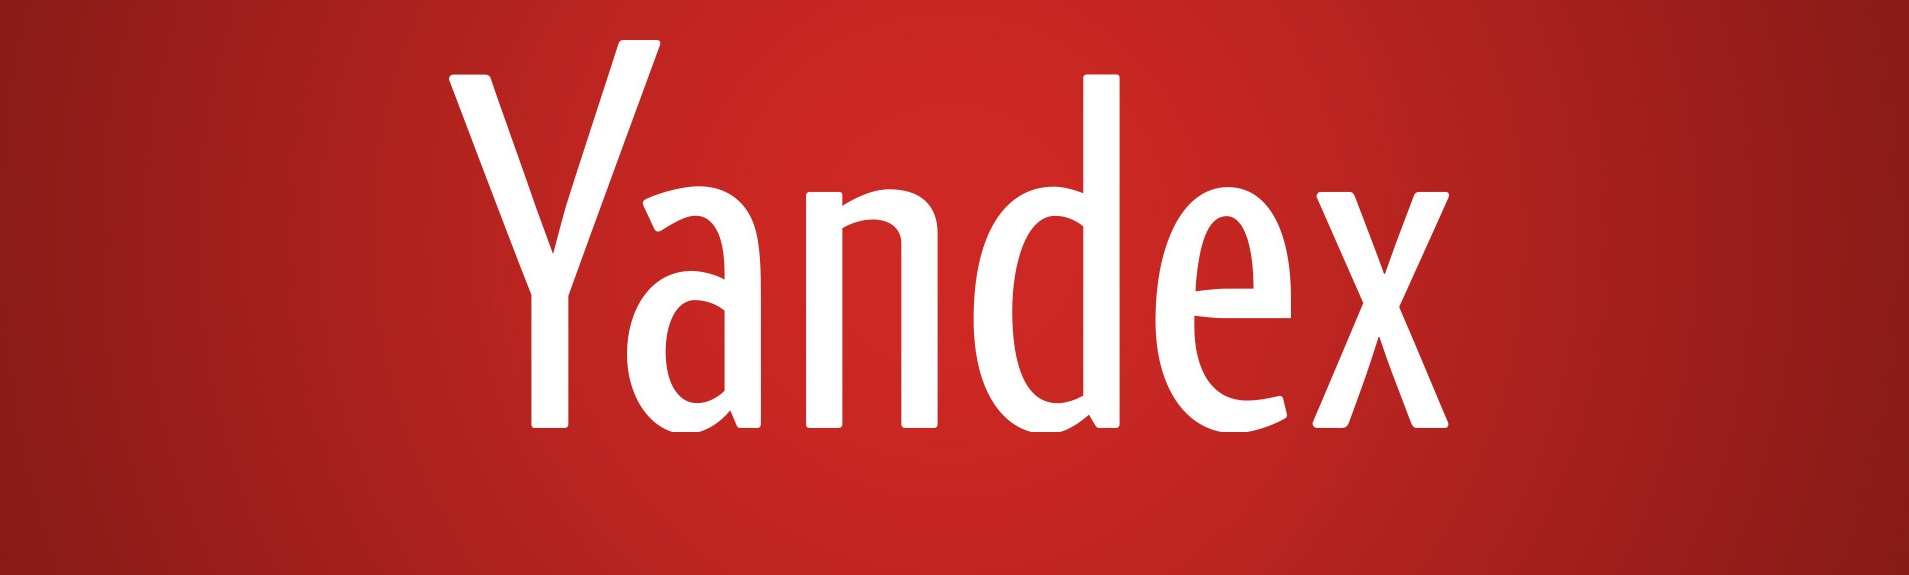 Продвижение сайта в ТОП 10 по Яндексу